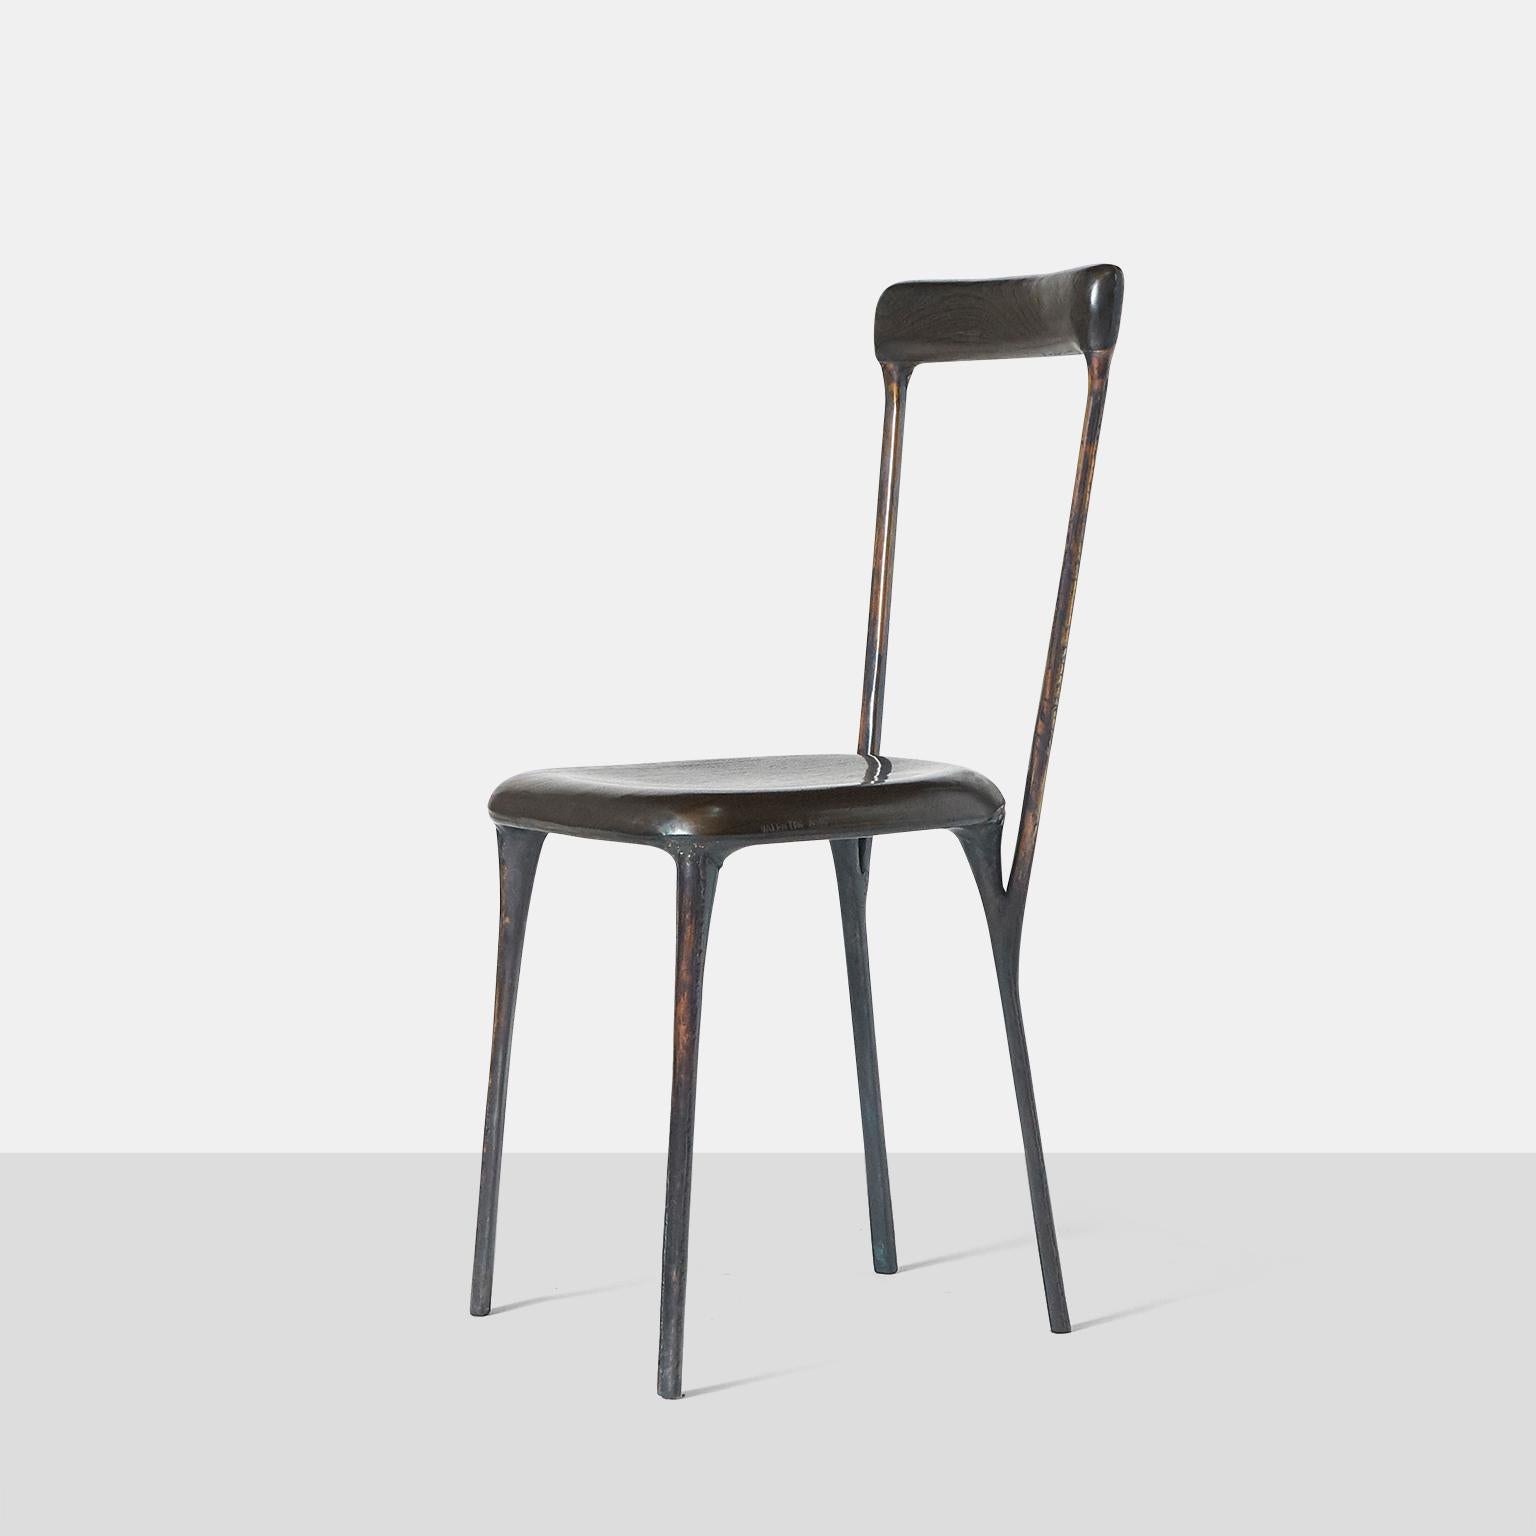 Une chaise d'appoint du designer de mobilier allemand Valentin Loellmann, vers 2017. Entièrement construit à la main en cuivre et non en fonte, avec un siège en chêne carbonisé et un dossier en wengé qui a été fait pour s'adapter à la forme